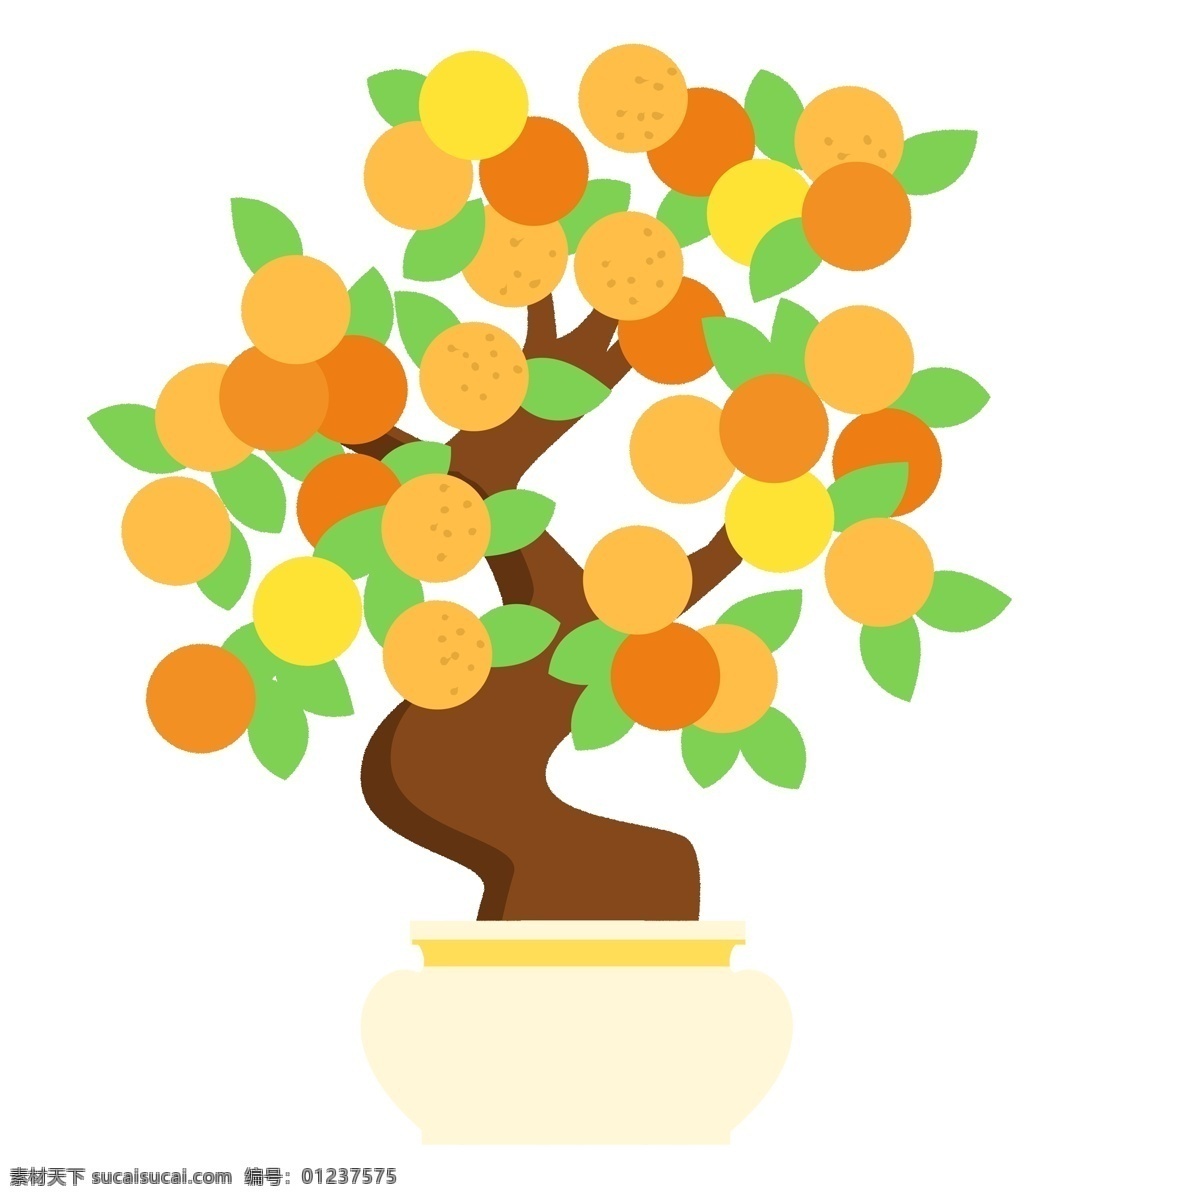 喜庆 大吉大利 春节 手绘 橘子 树 卡通 彩色 中国风 树木 盆栽 盆景 橘子树 春节元素